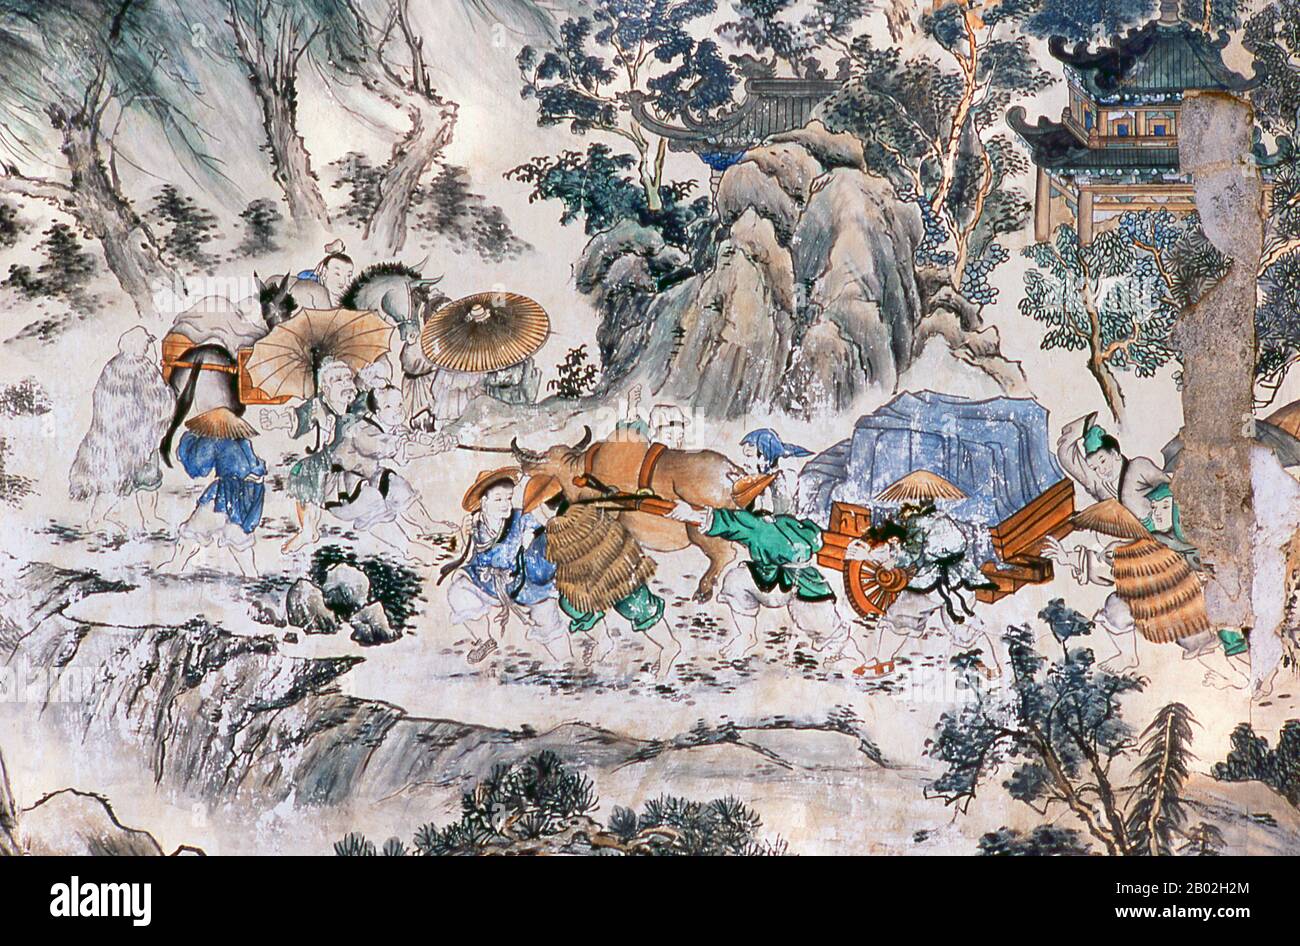 "Viaggio verso l'Occidente" è uno dei Quattro Grandi Romanzi classici della letteratura cinese. Originariamente pubblicato anonimamente nel 1590s durante la Dinastia Ming, la sua paternità è stata attribuita allo studioso Wu Cheng'en dal 20th secolo. Nei paesi di lingua inglese, il racconto è anche spesso conosciuto semplicemente come Scimmia. Il romanzo è un racconto fictionalizzato del leggendario pellegrinaggio in India del monaco buddista Xuanzang. Il monaco viaggiò nelle regioni occidentali durante la dinastia Tang, per ottenere testi sacri (sūtras). Il Bodhisattva Guan Yin, su istruzione del Buddha, dà questo compito Foto Stock